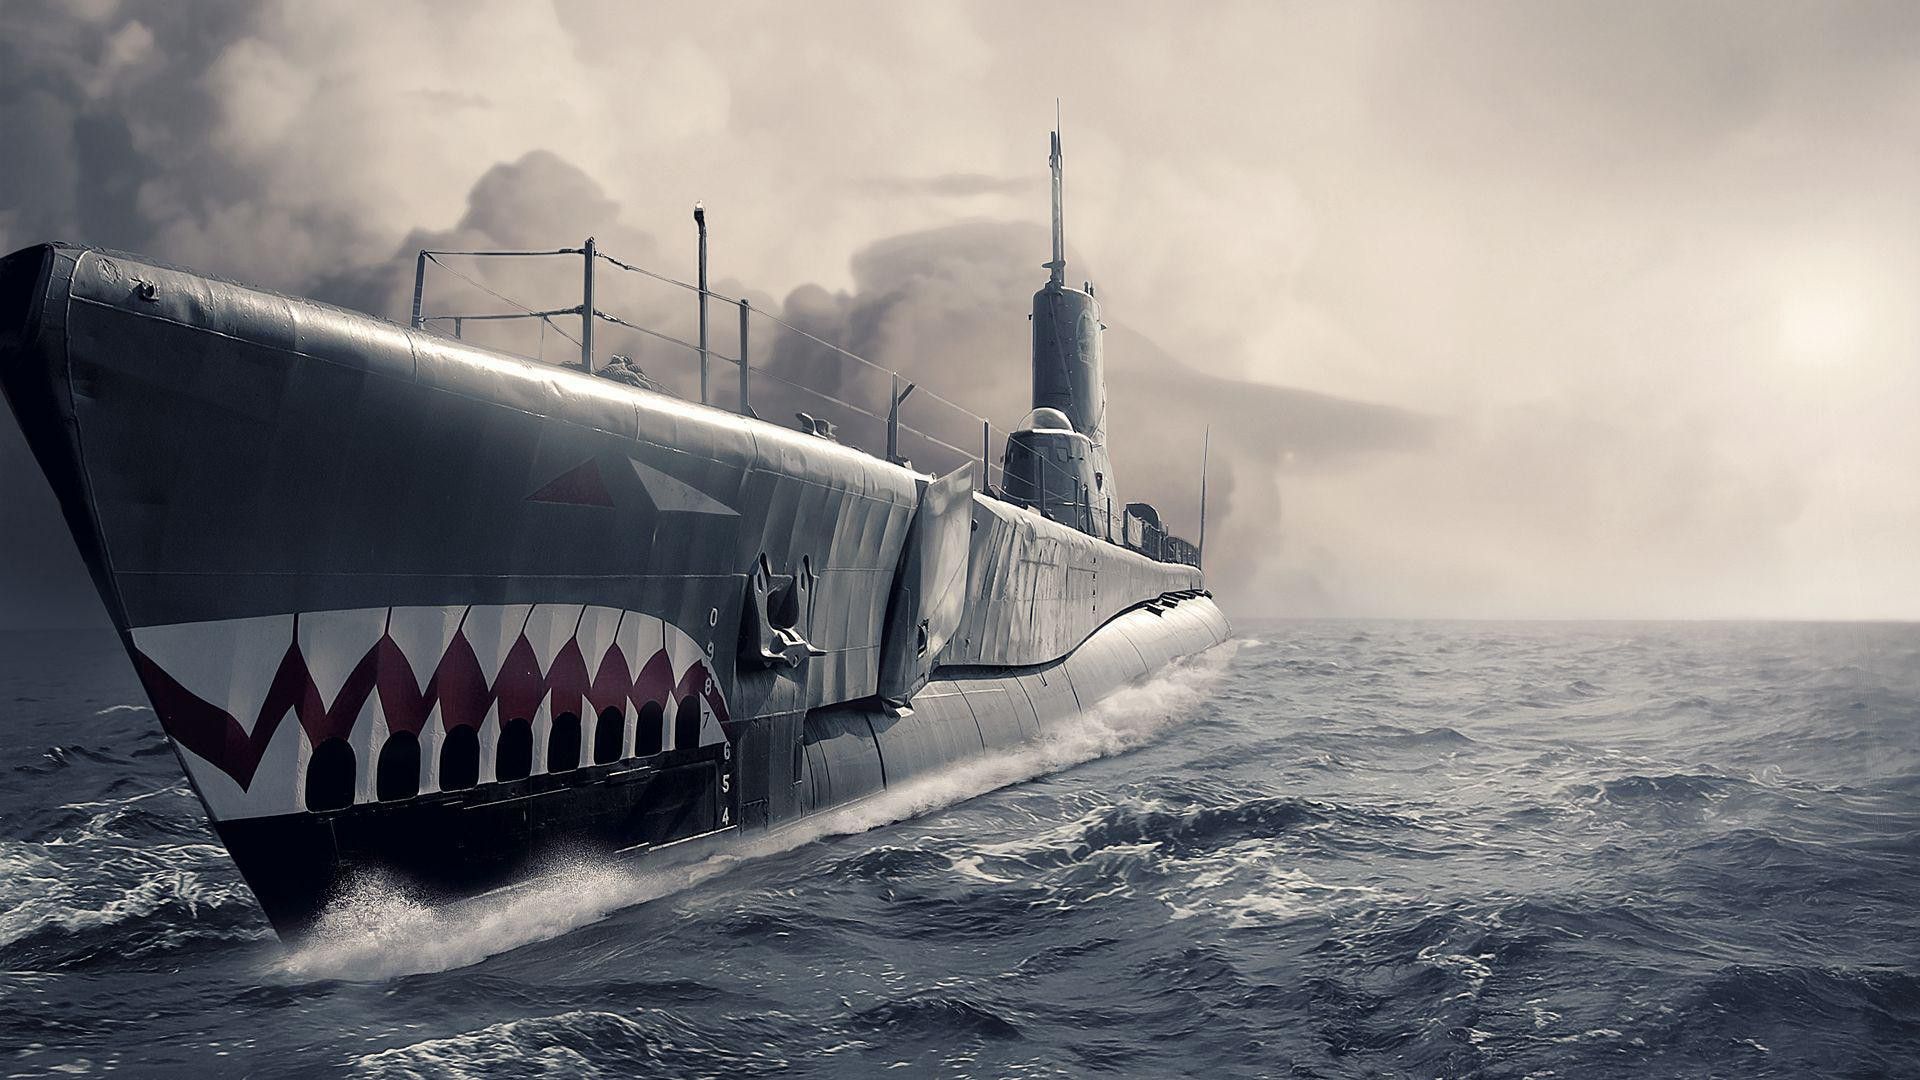  عکس جالب و دیدنی از زیردریایی شگفت انگیز 